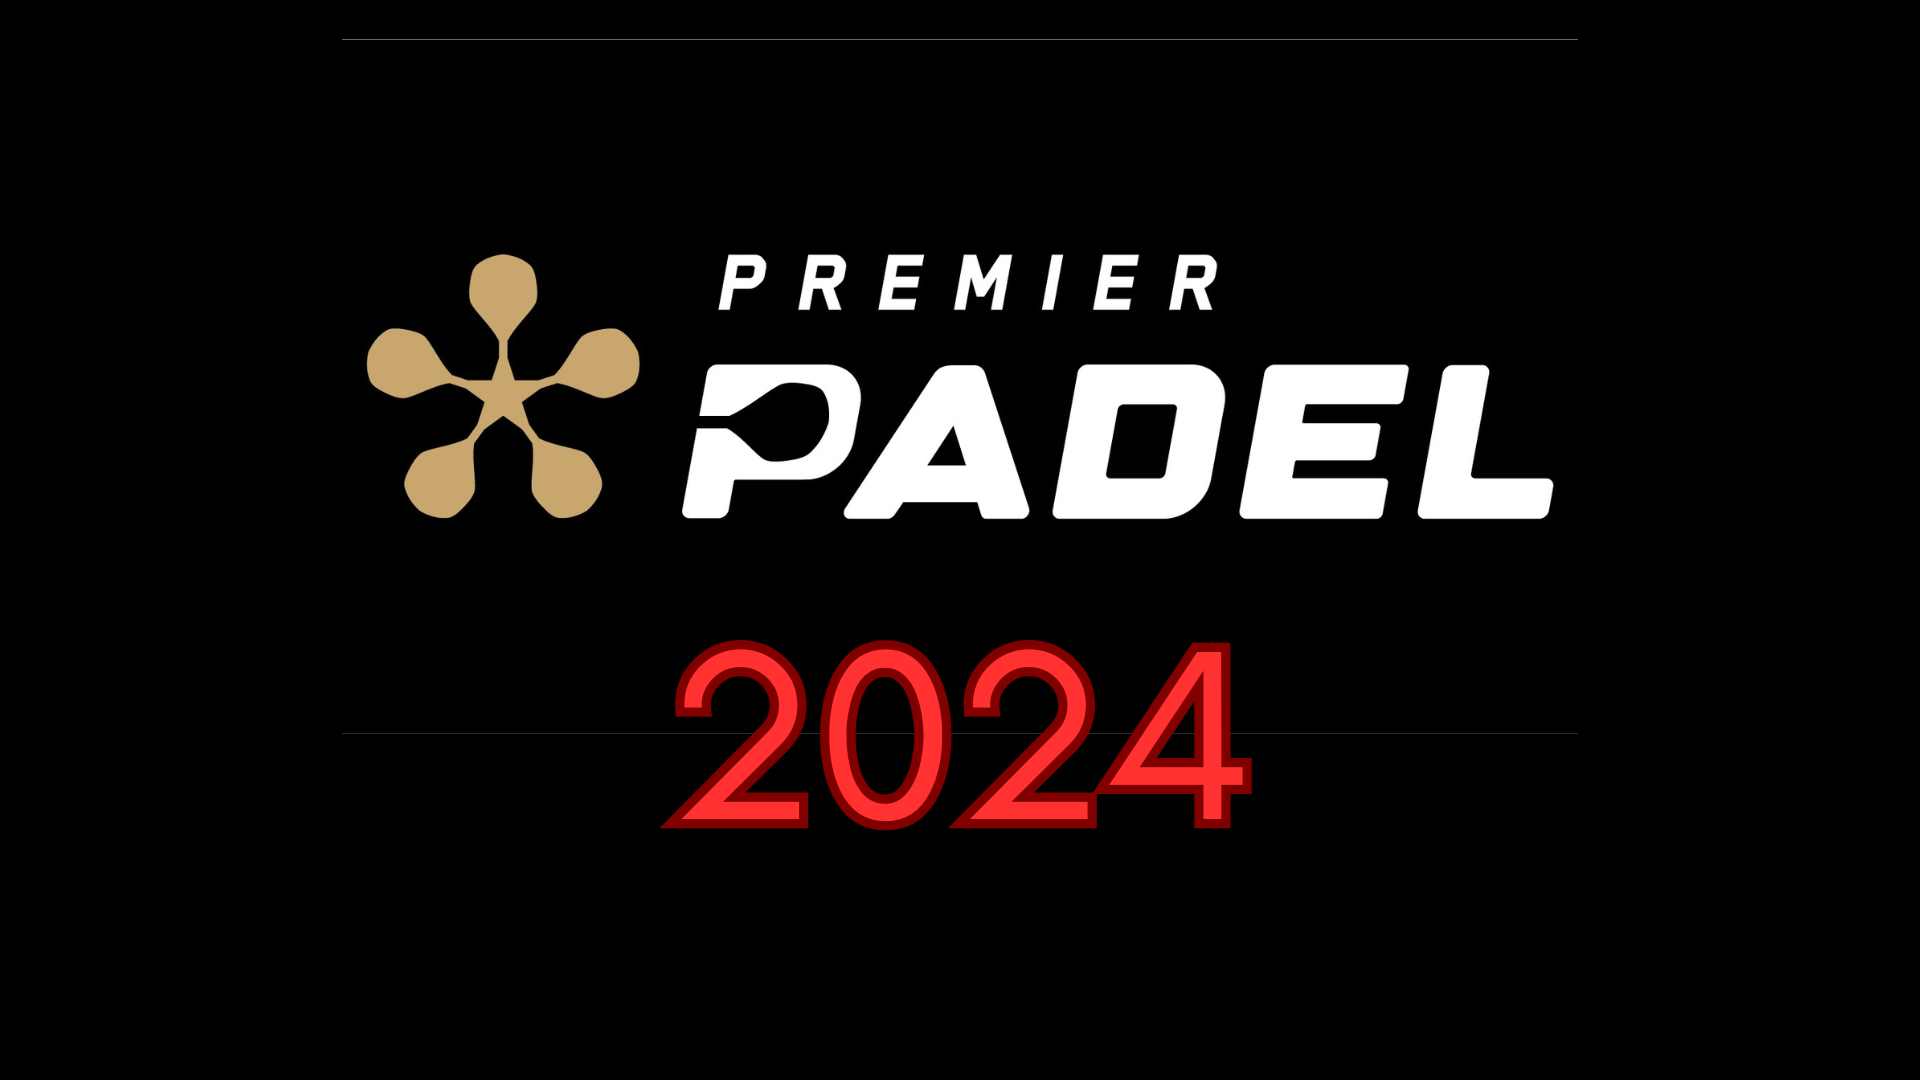 Premier Padel 2024 transfer window logo